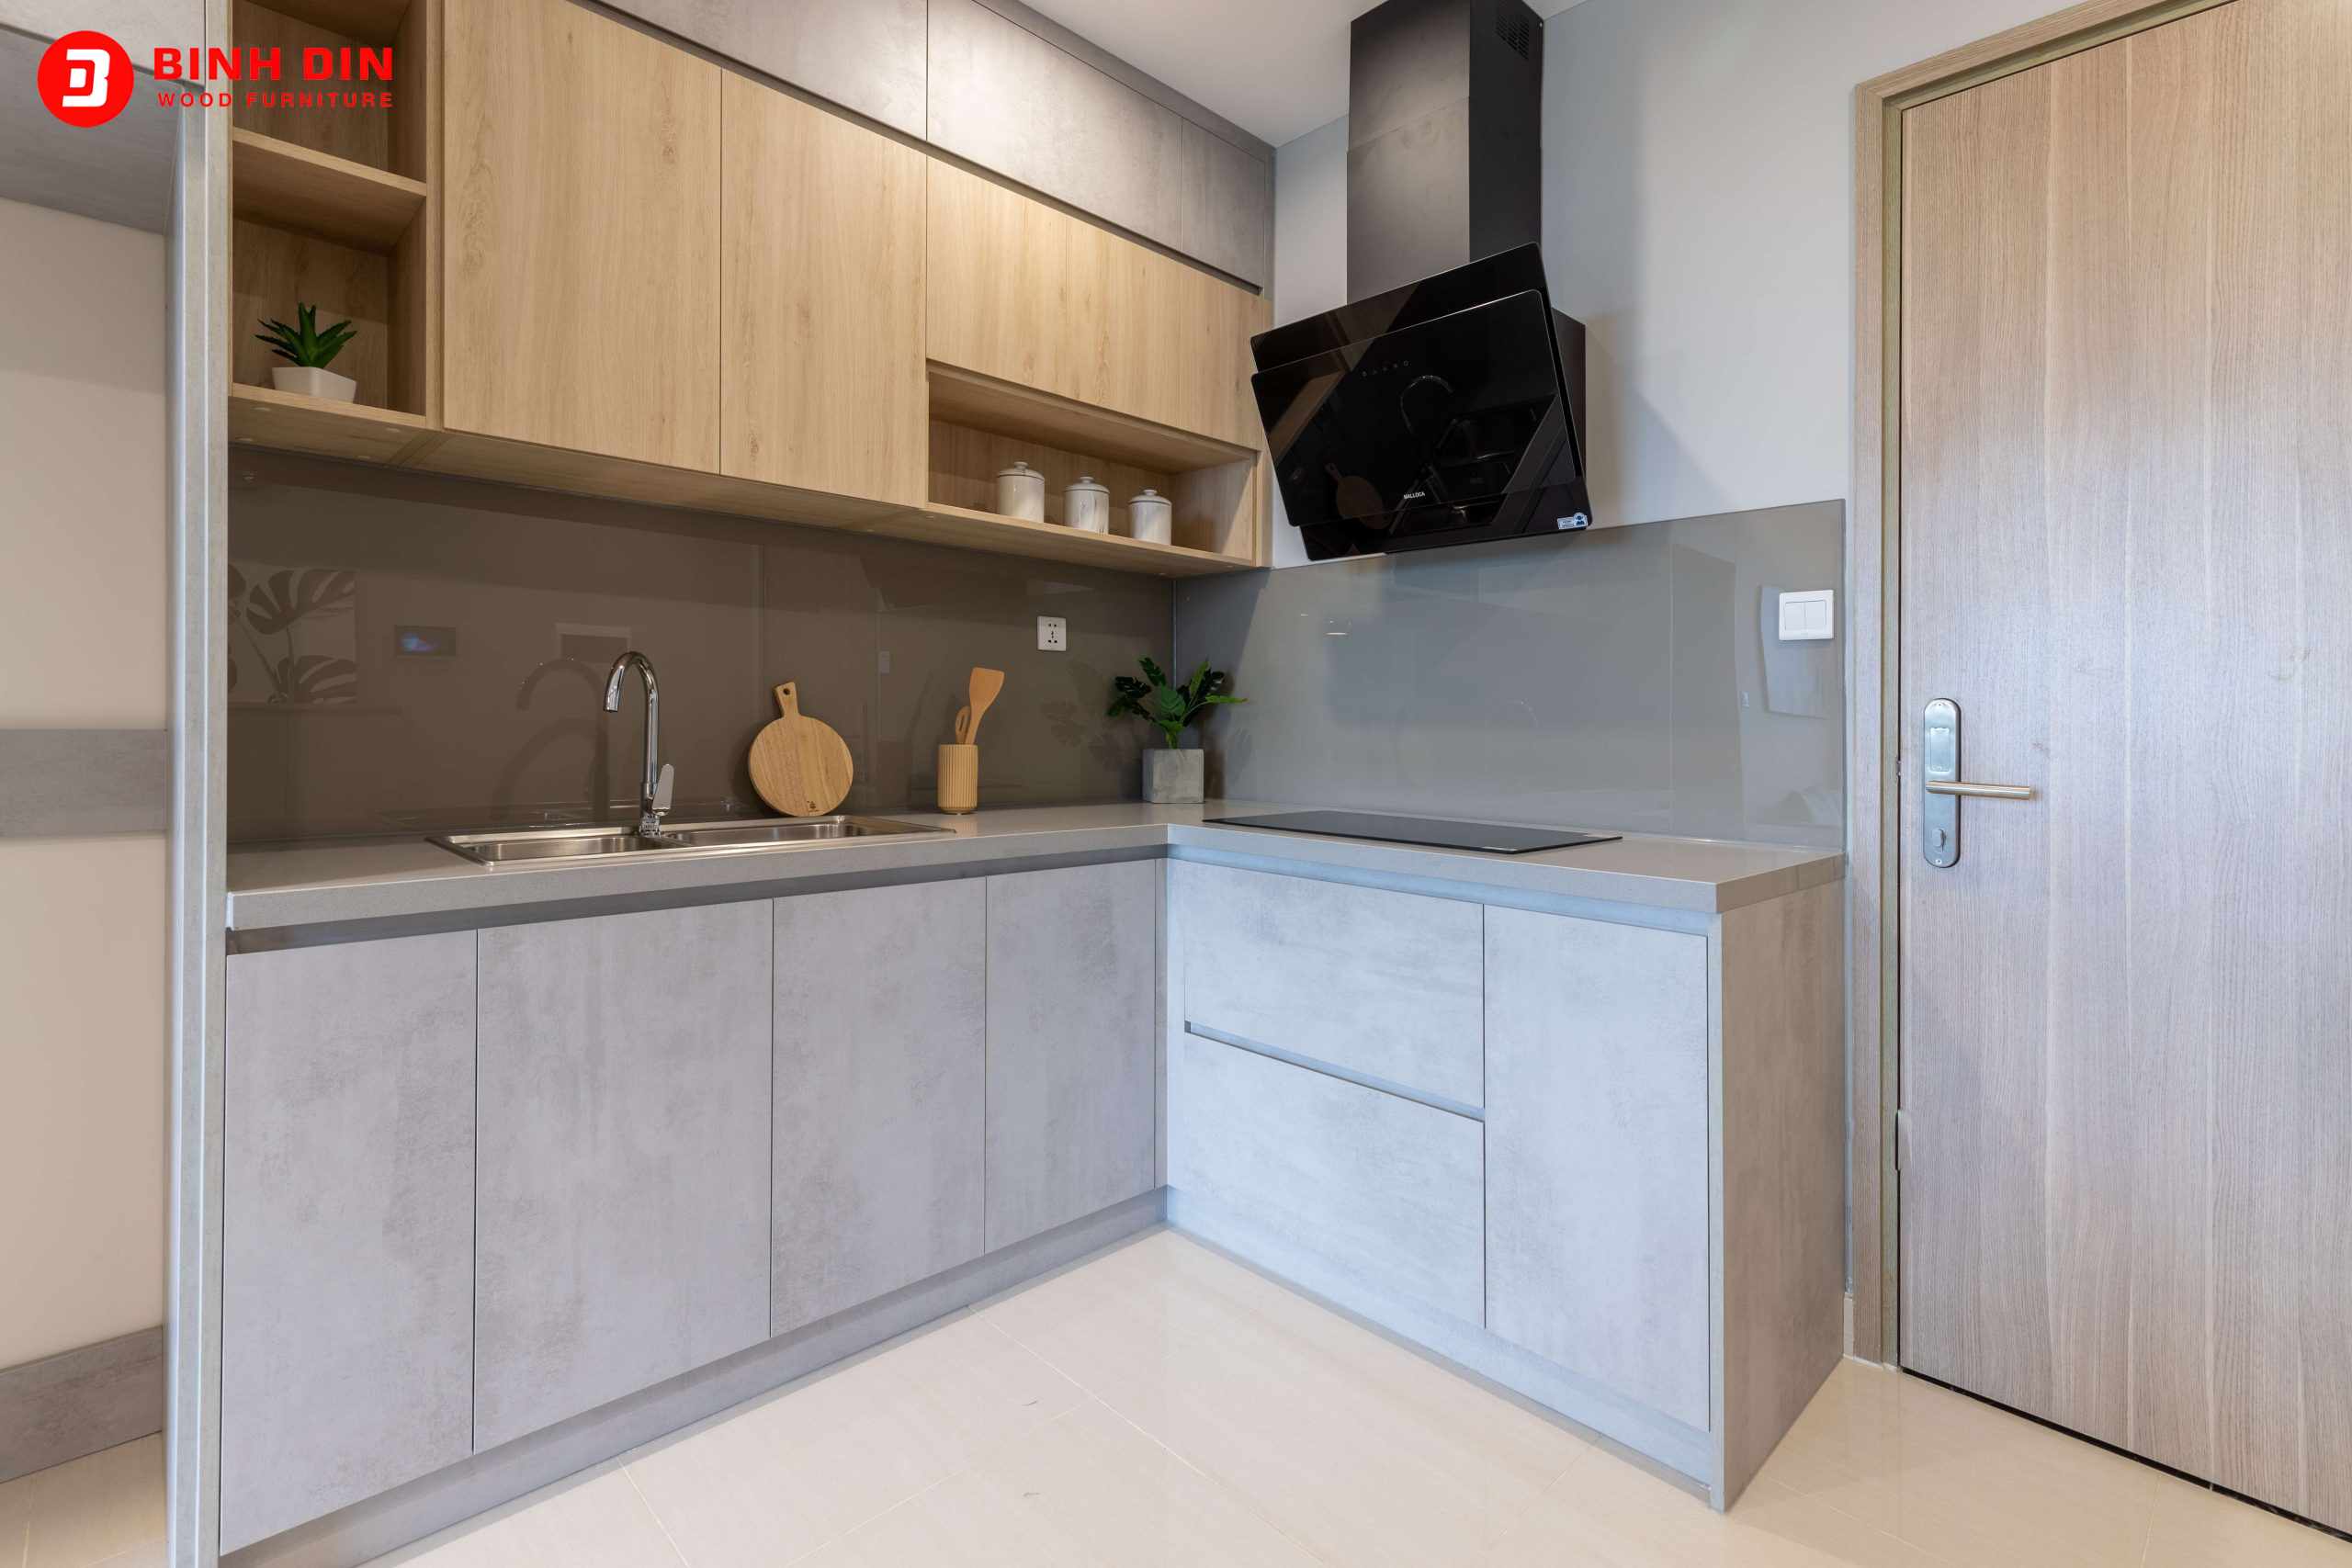 Mẫu tủ bếp tự nhiên chữ L cho không gian nhà ở chung cư